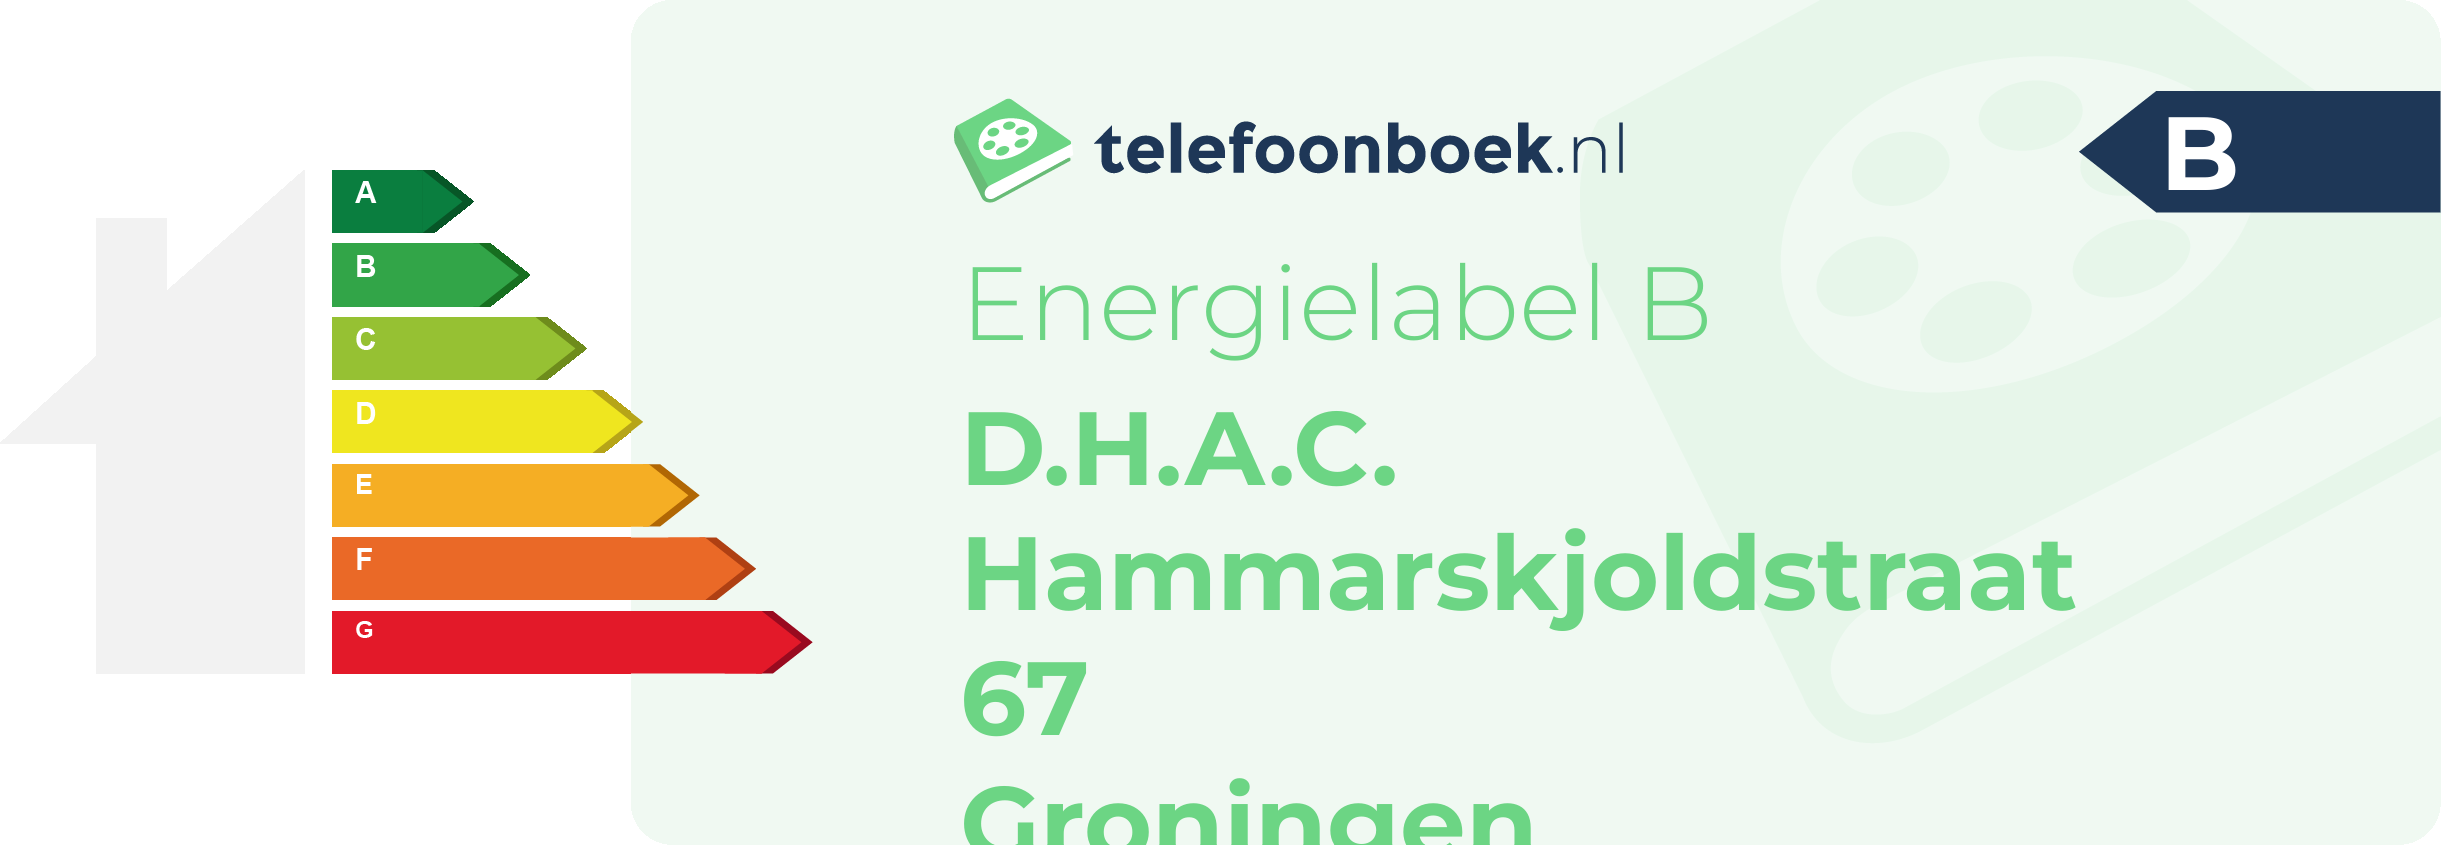 Energielabel D.H.A.C. Hammarskjoldstraat 67 Groningen